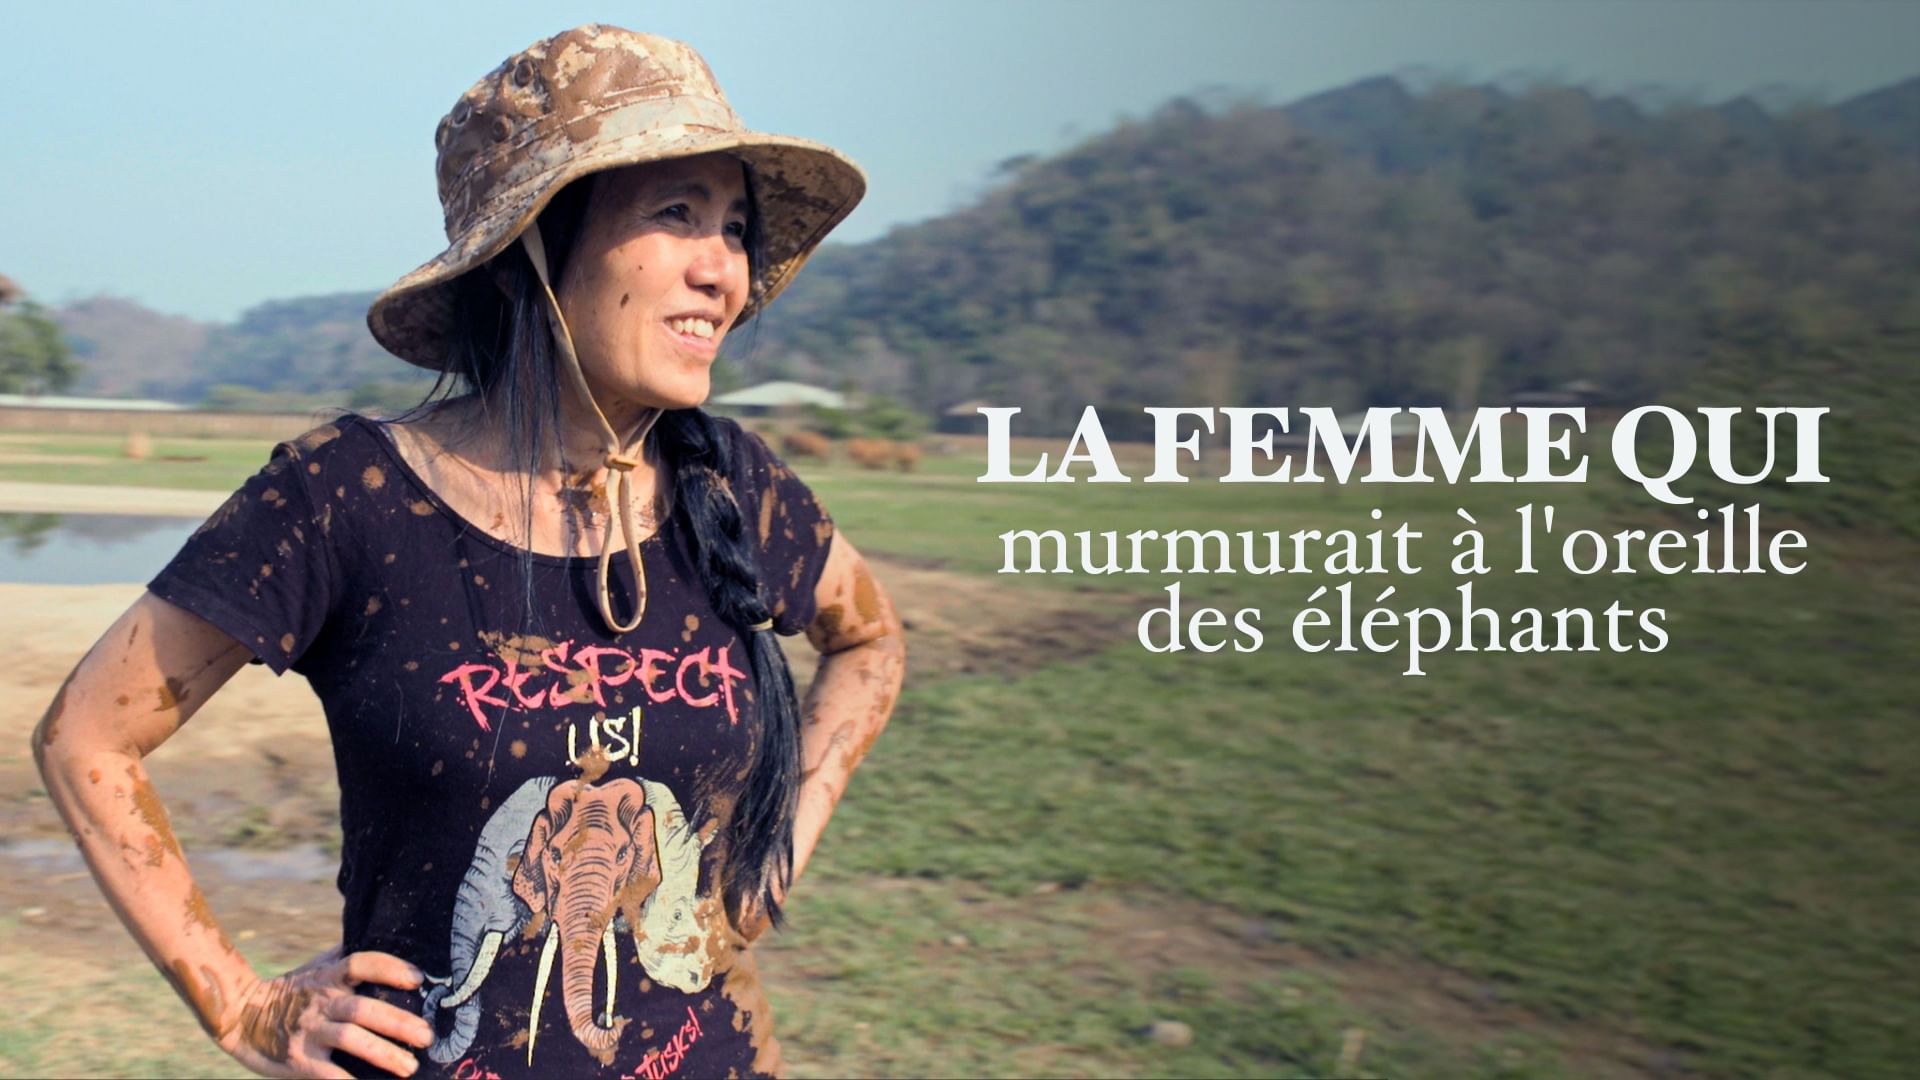 lek chailert, la femme qui murmurait à l'oreille des éléphants de thaïlande